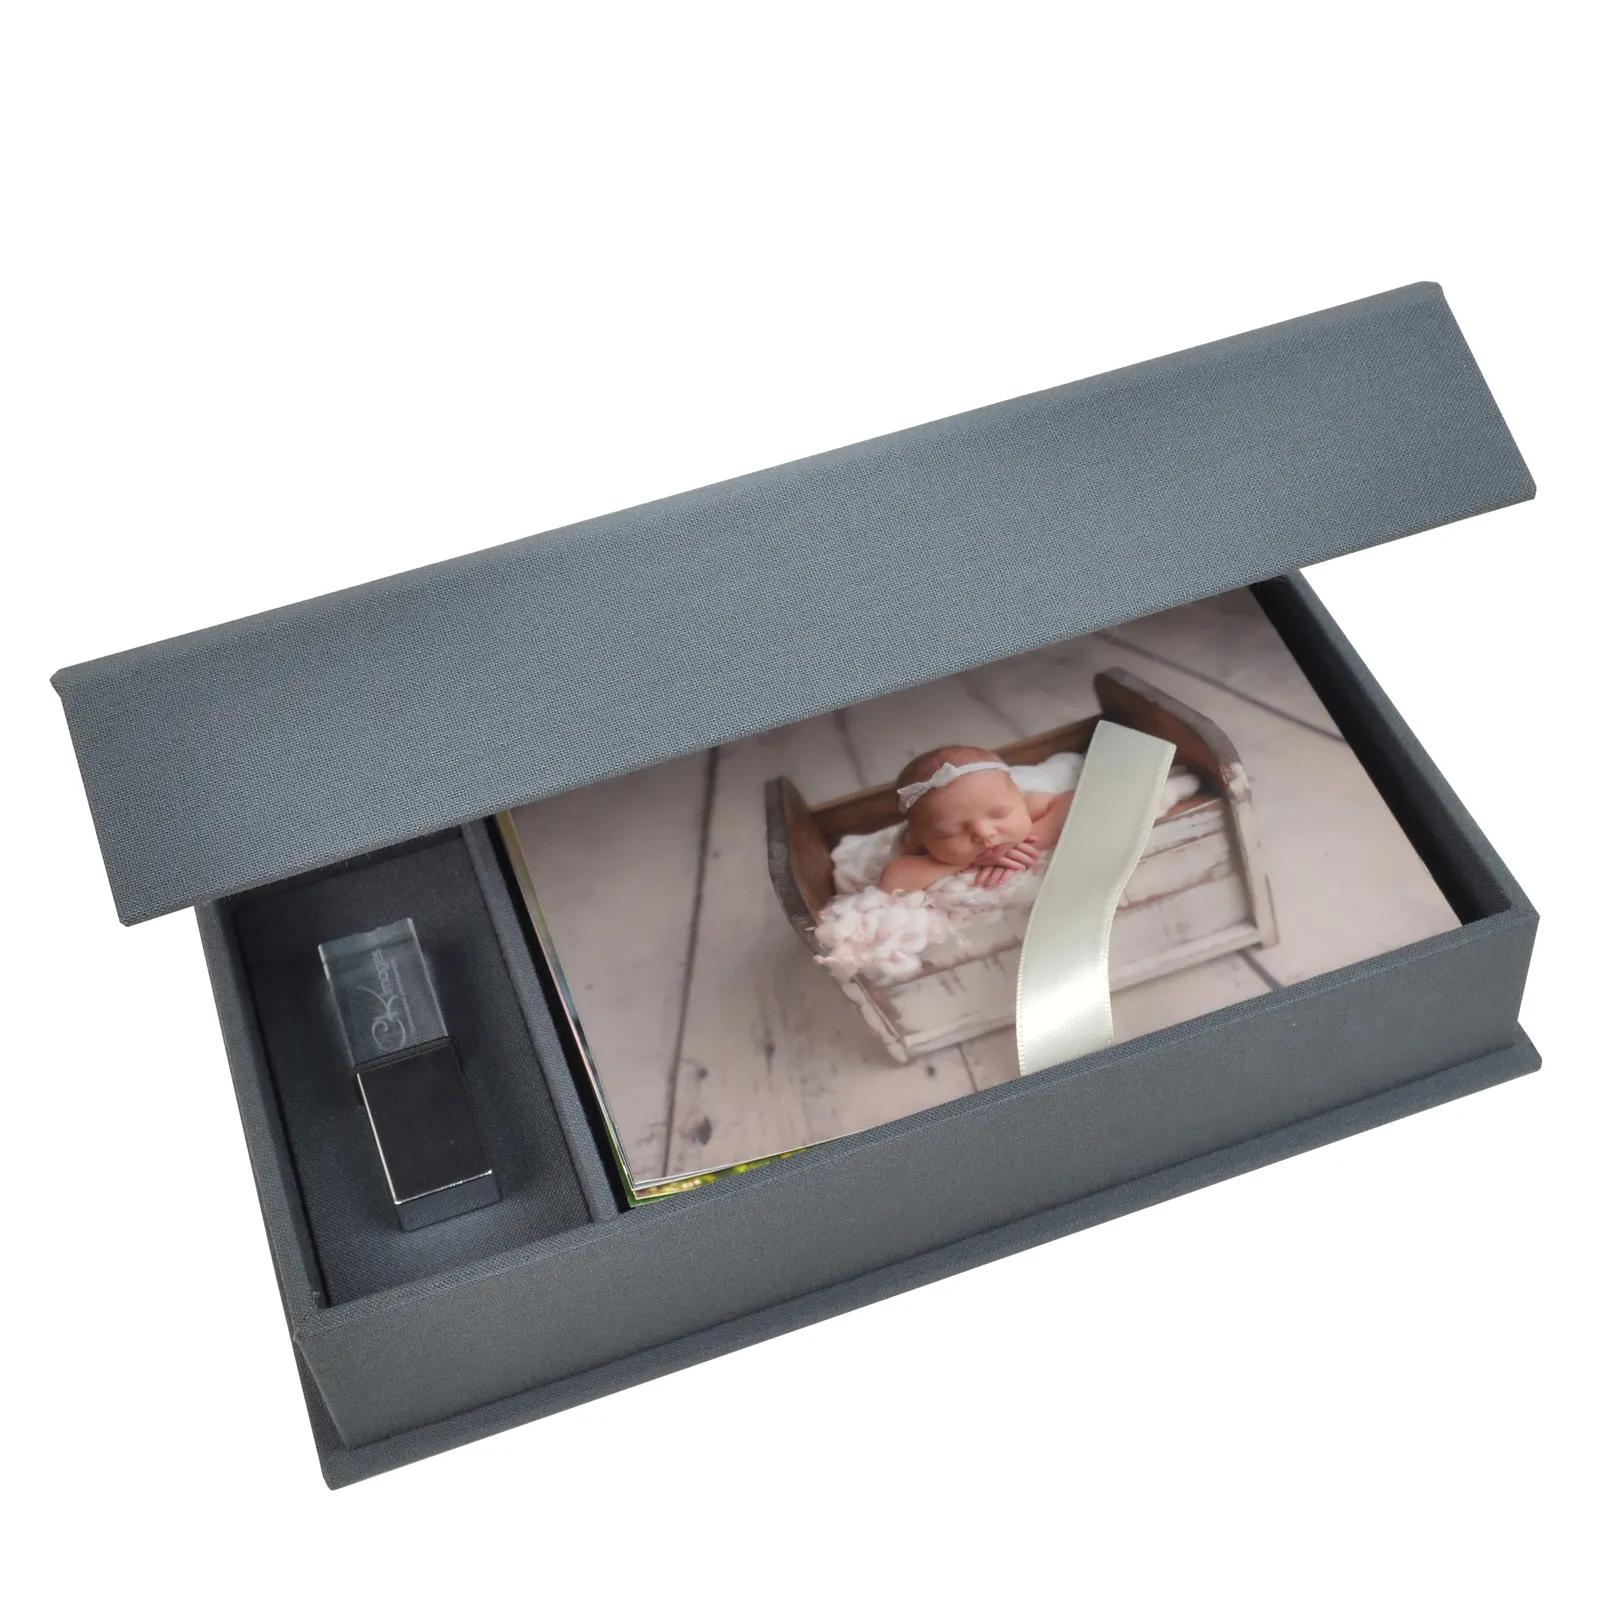 USB 슬롯이있는 리넨 사진 상자 사진 인쇄 용 프레젠테이션 상자 4X6 또는 5x7 또는 8x10 사진 상자